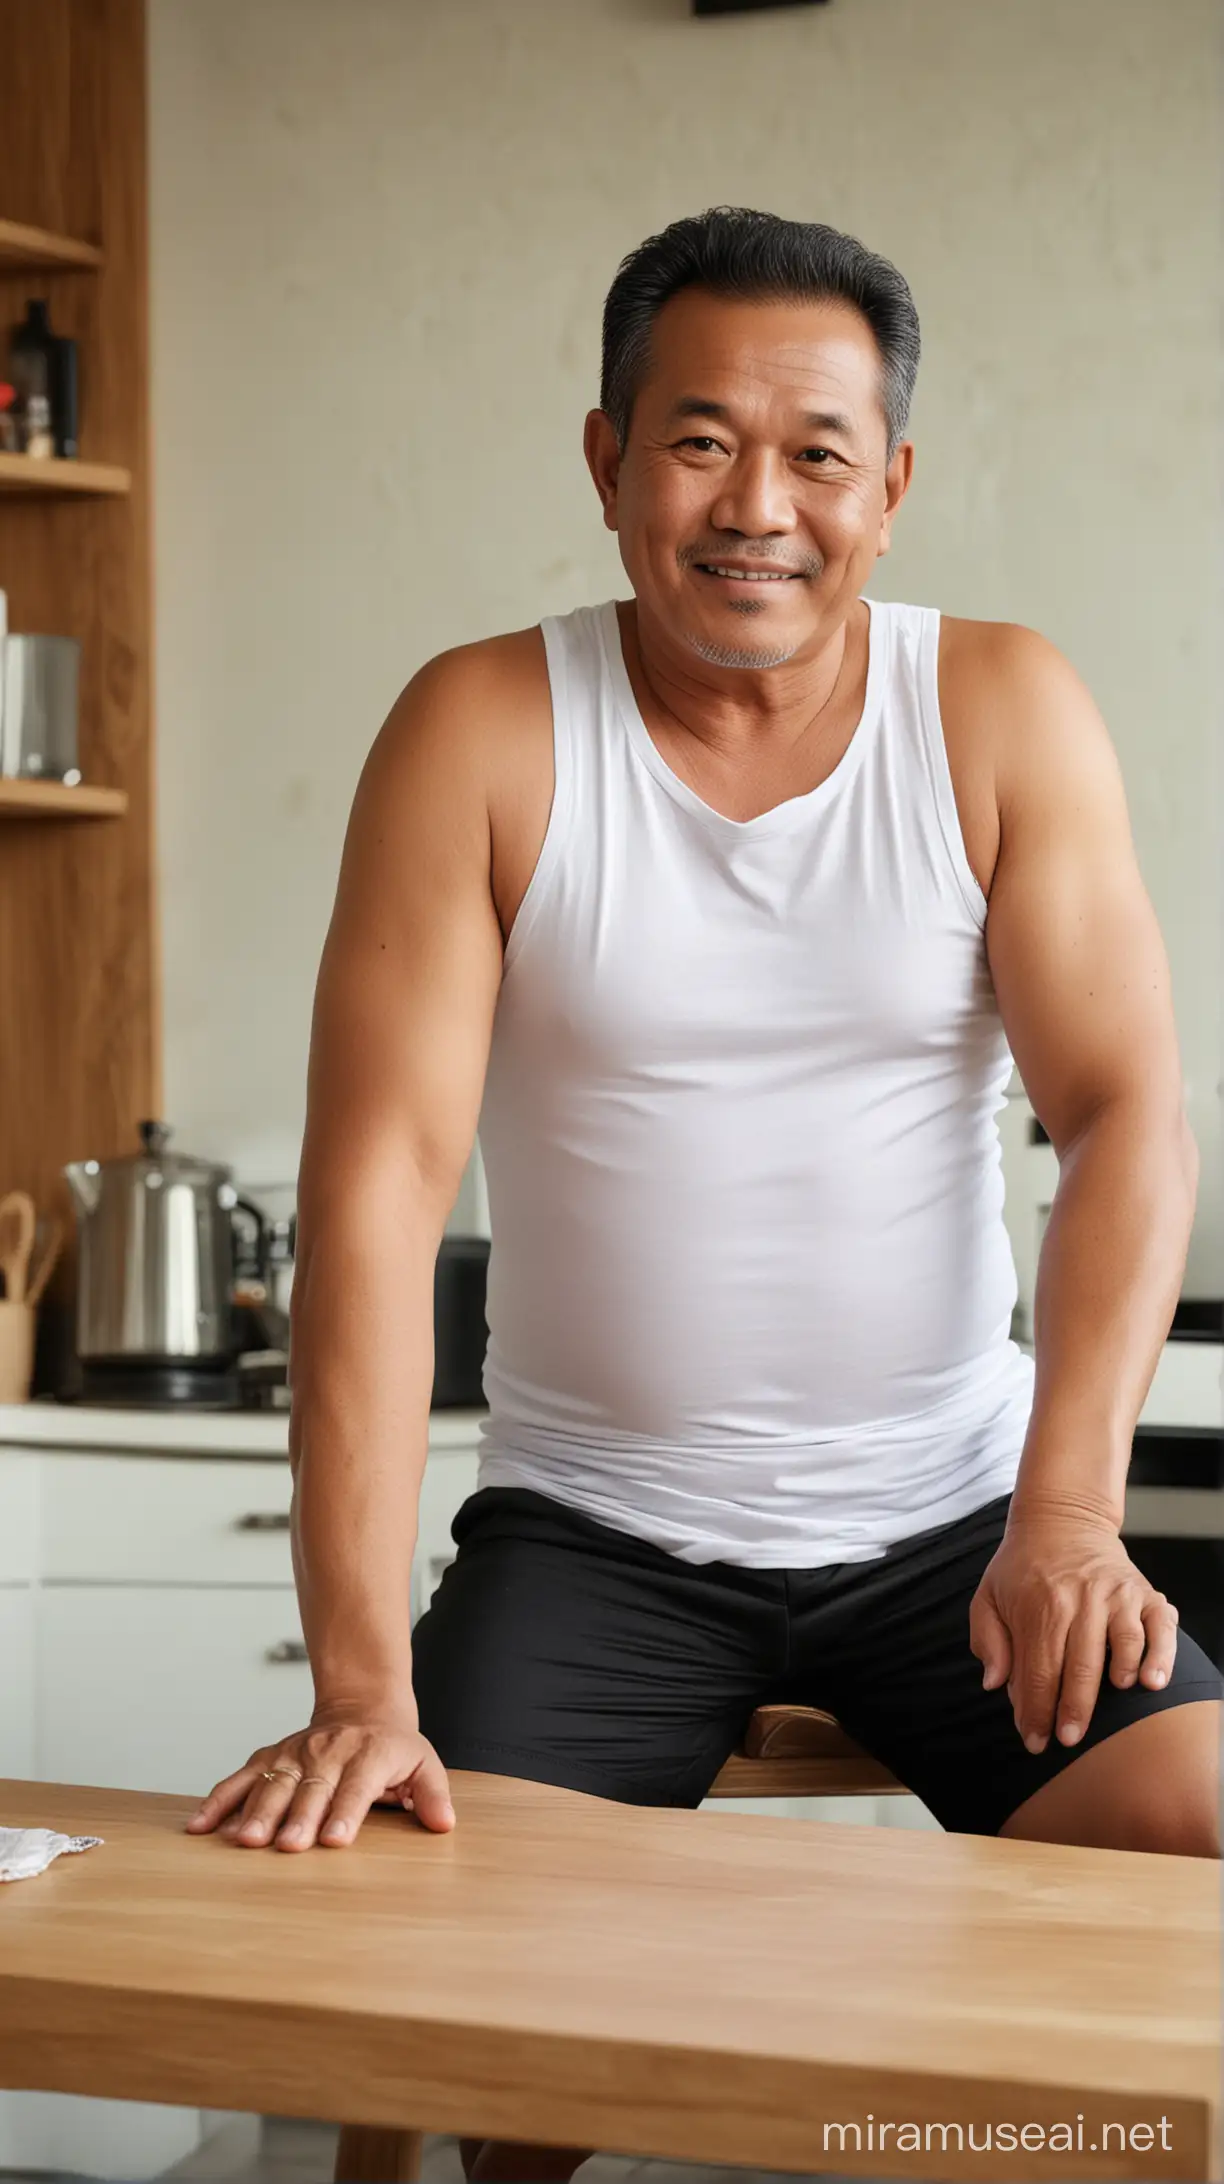 Foto realistis,pria indonesia usia 55 tahun memakai baju tank top putih,celana hitam pendek,badan gemuk,sedang duduk di kursi meja makan,latar belakang dapur